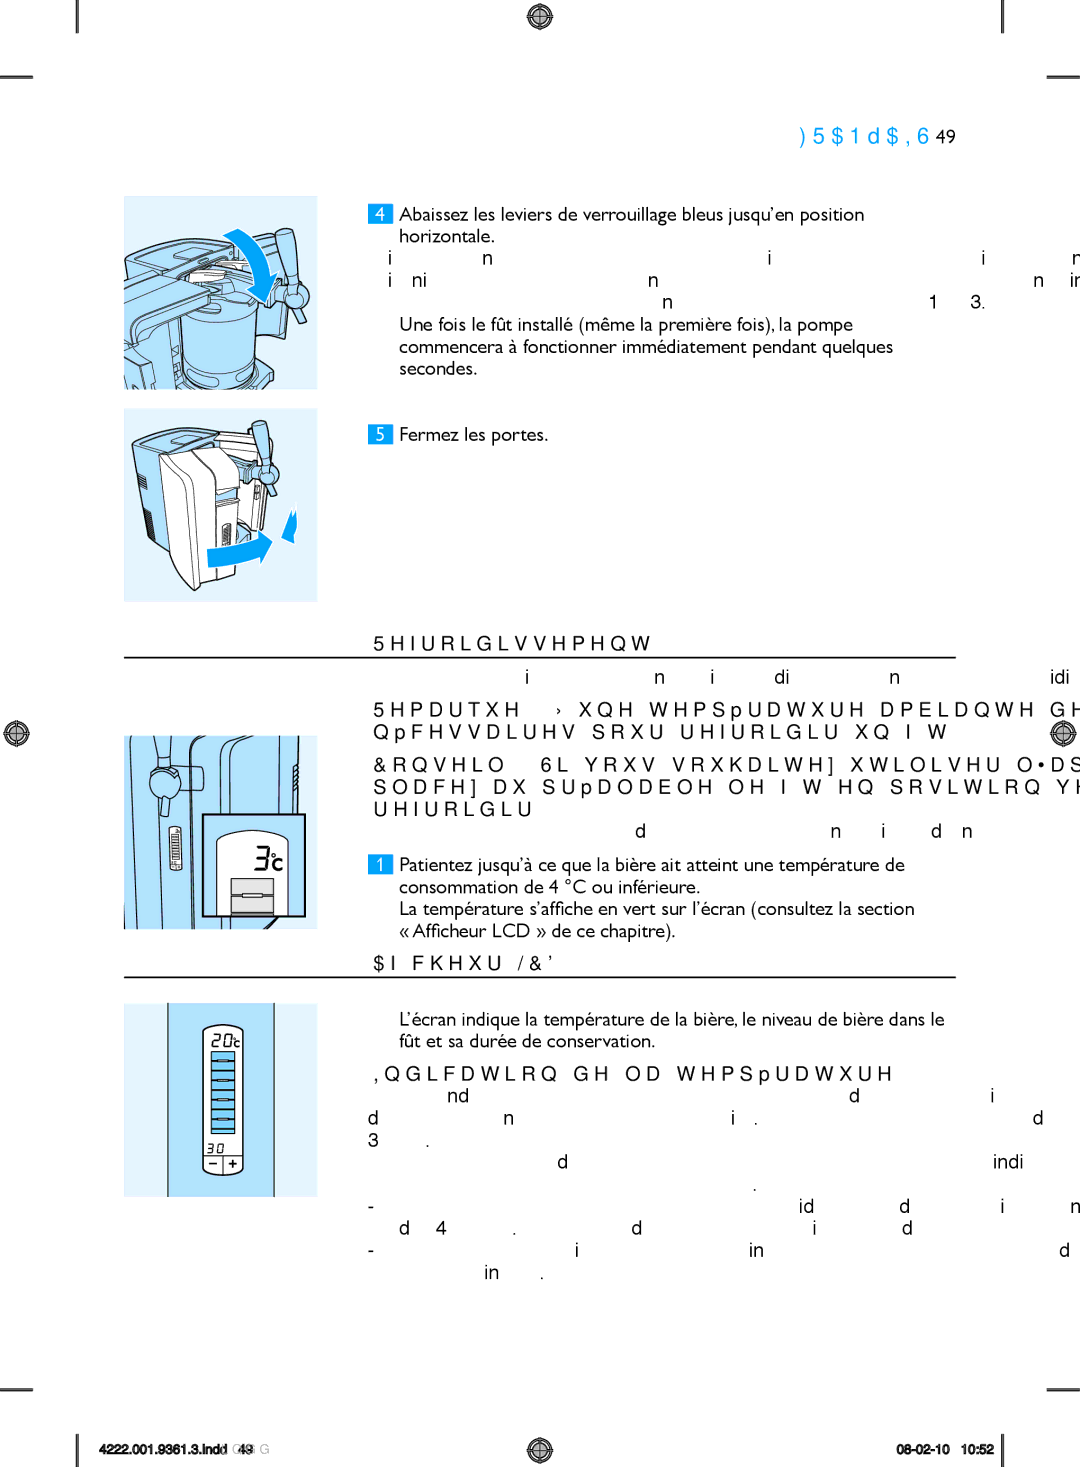 Philips hd3620 manual Refroidissement, Afficheur LCD, Indication de la température 